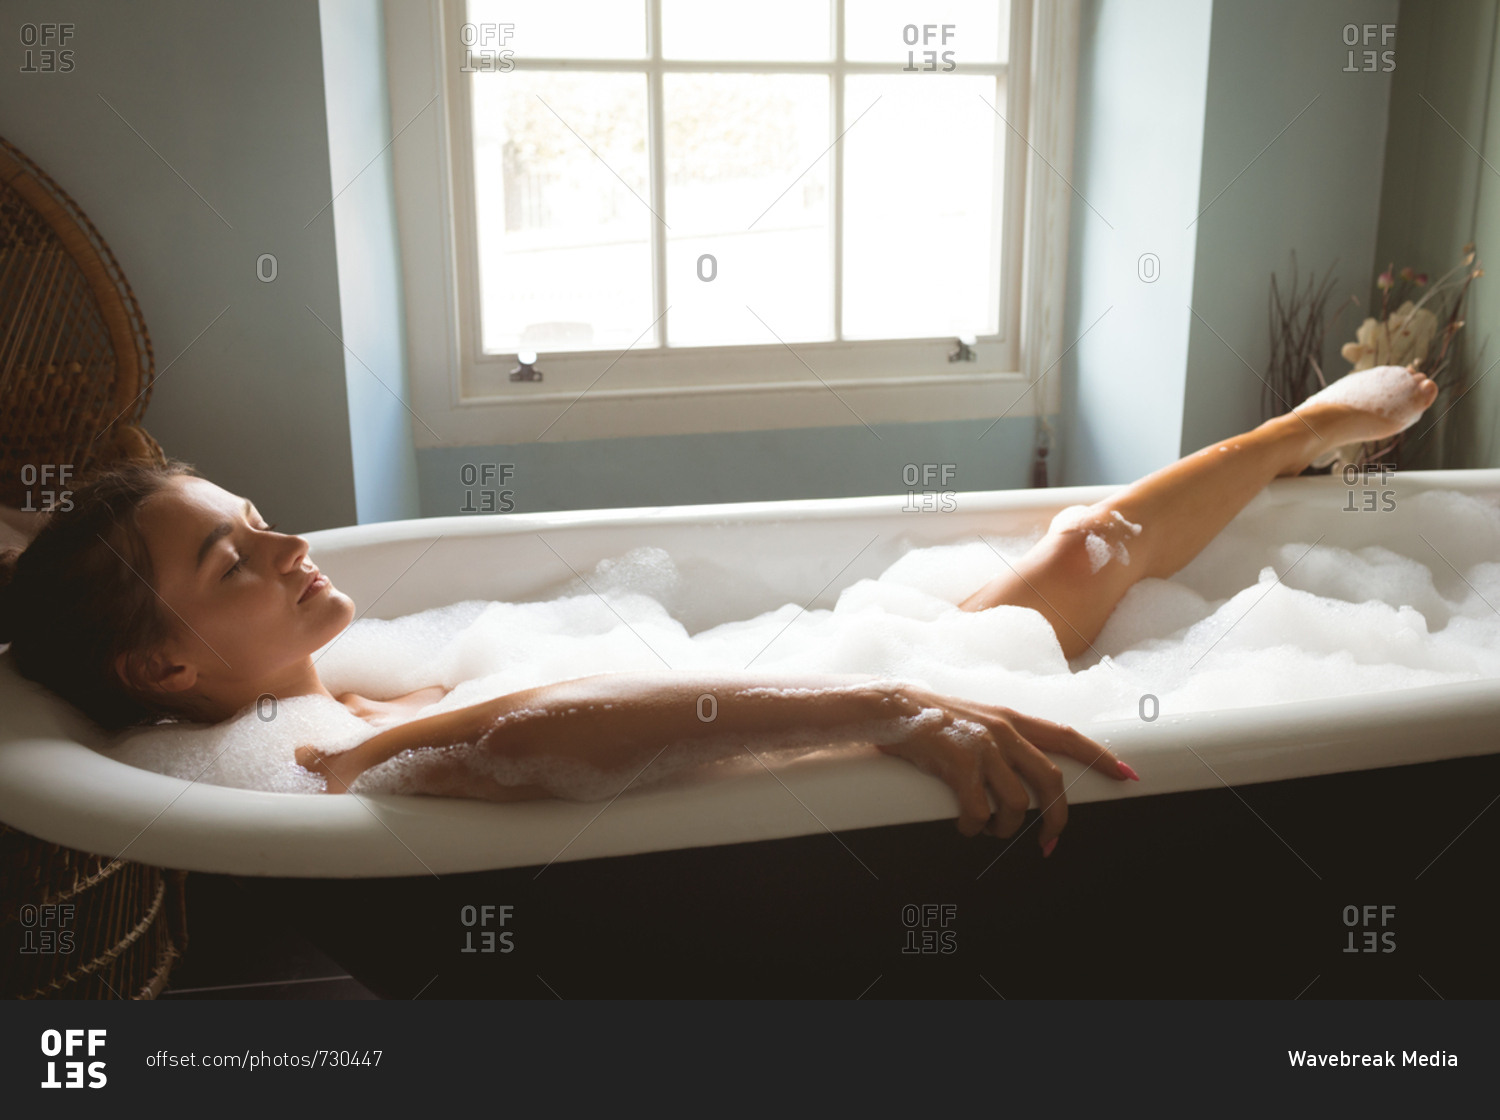 Woman taking a bath in bath tub at home